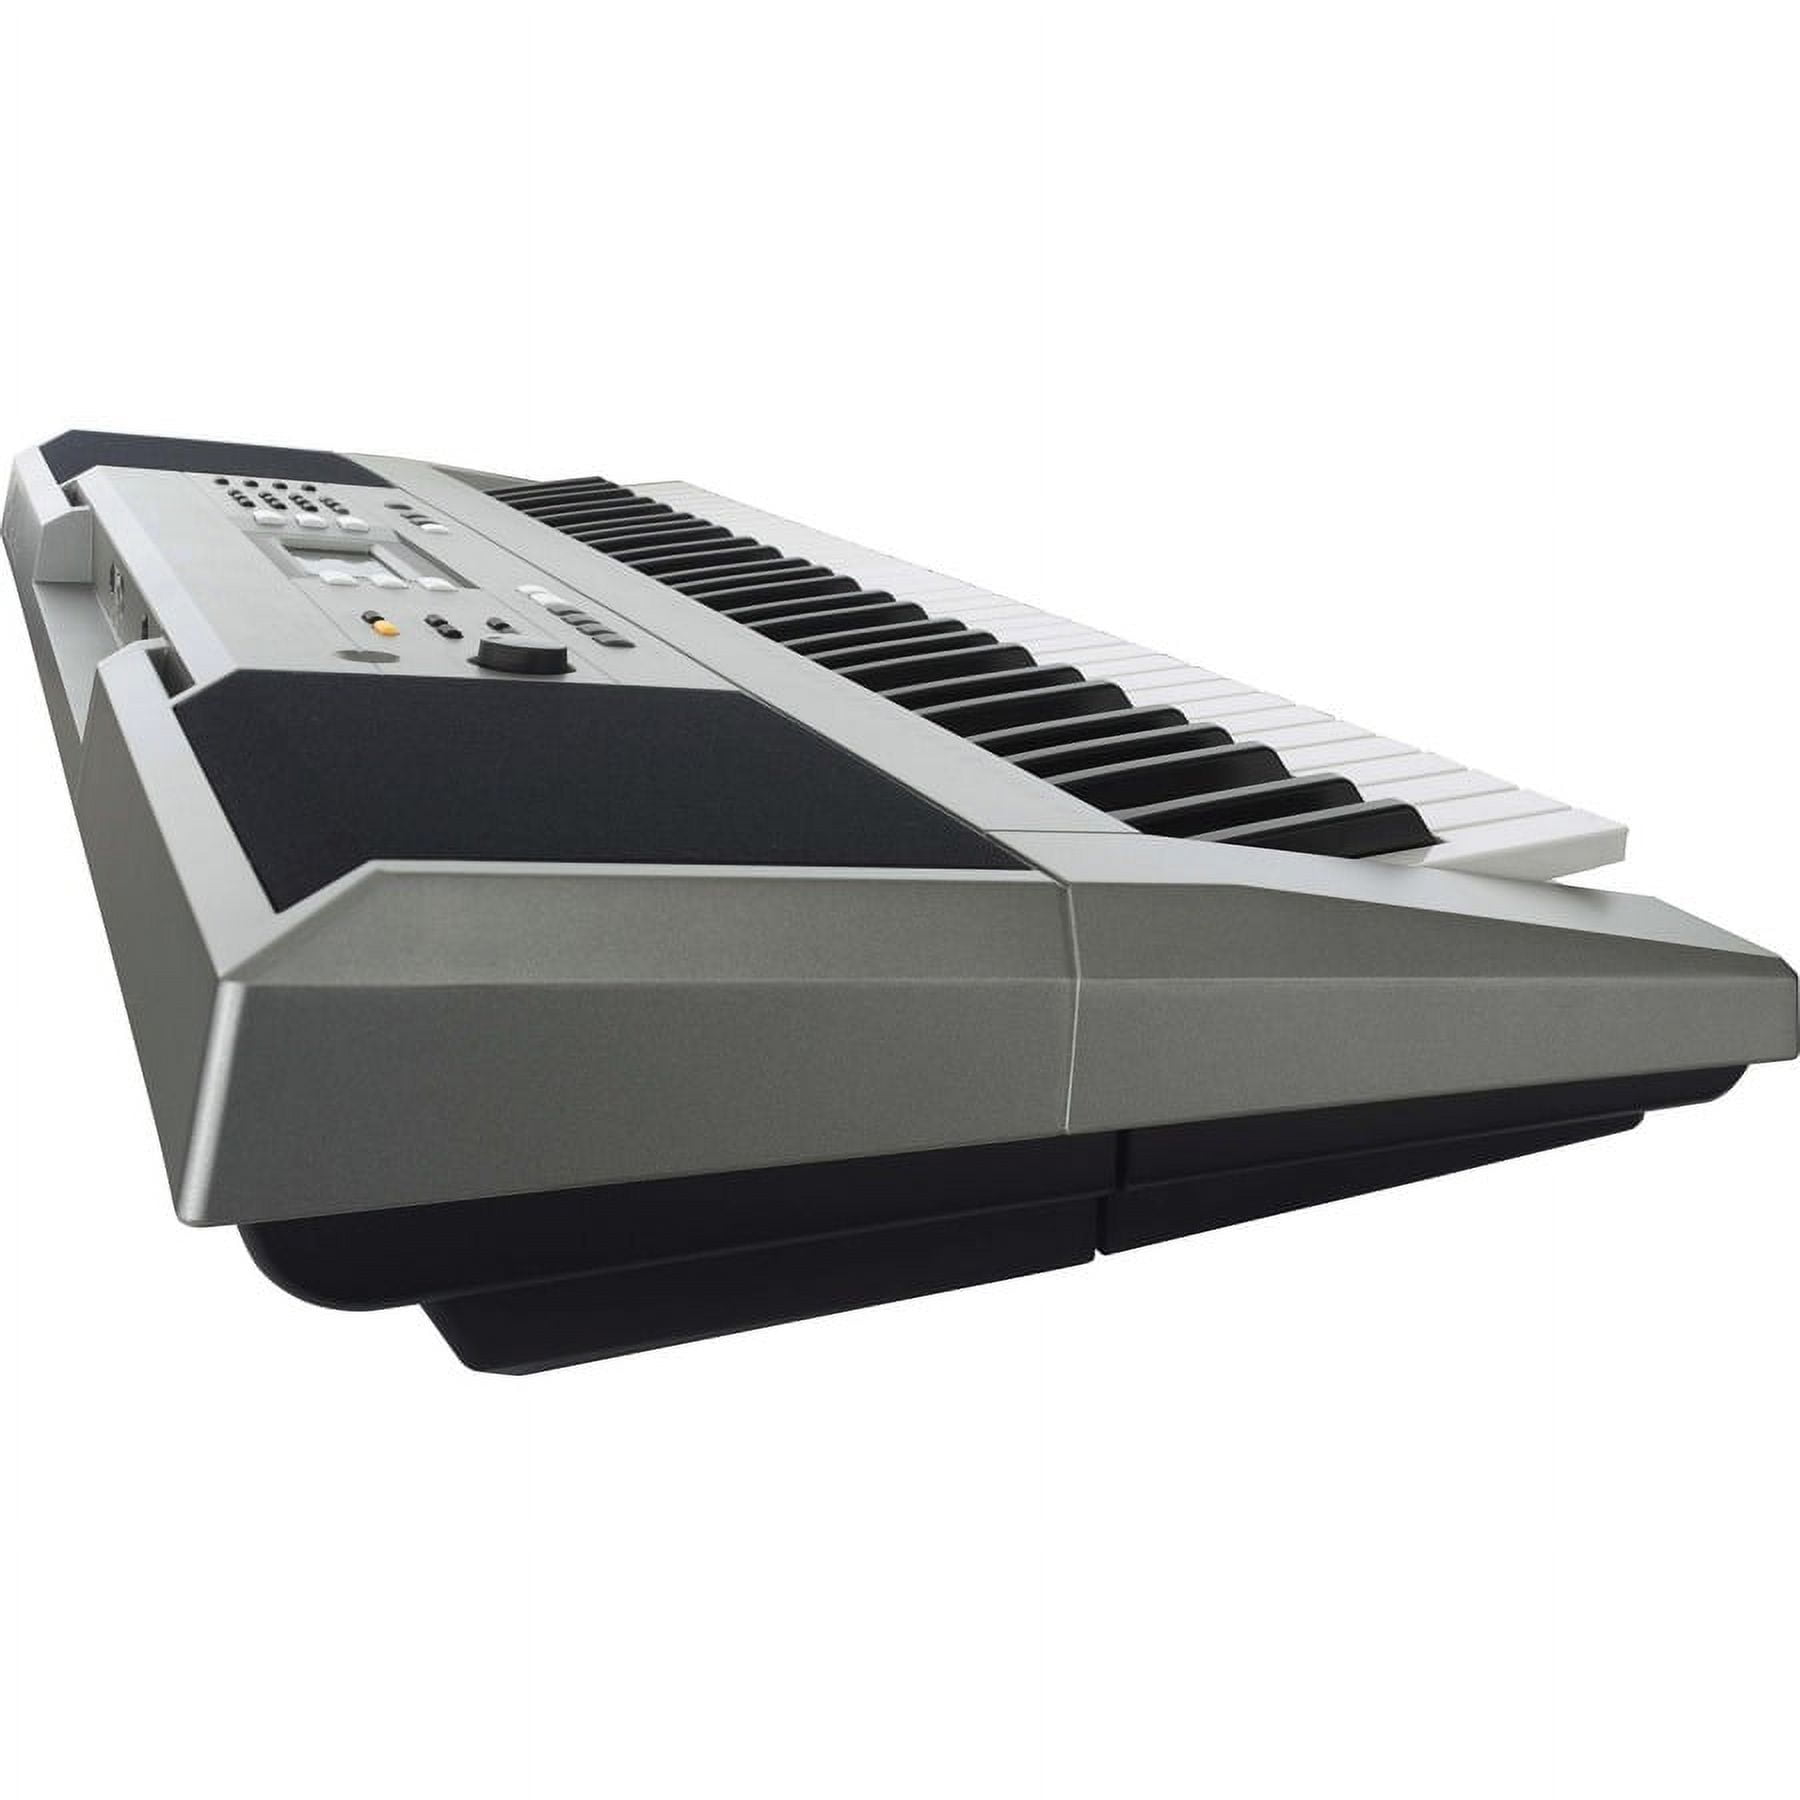 YAMAHA Psr-E353 Portable Yamaha Keyboard - Walmart.com